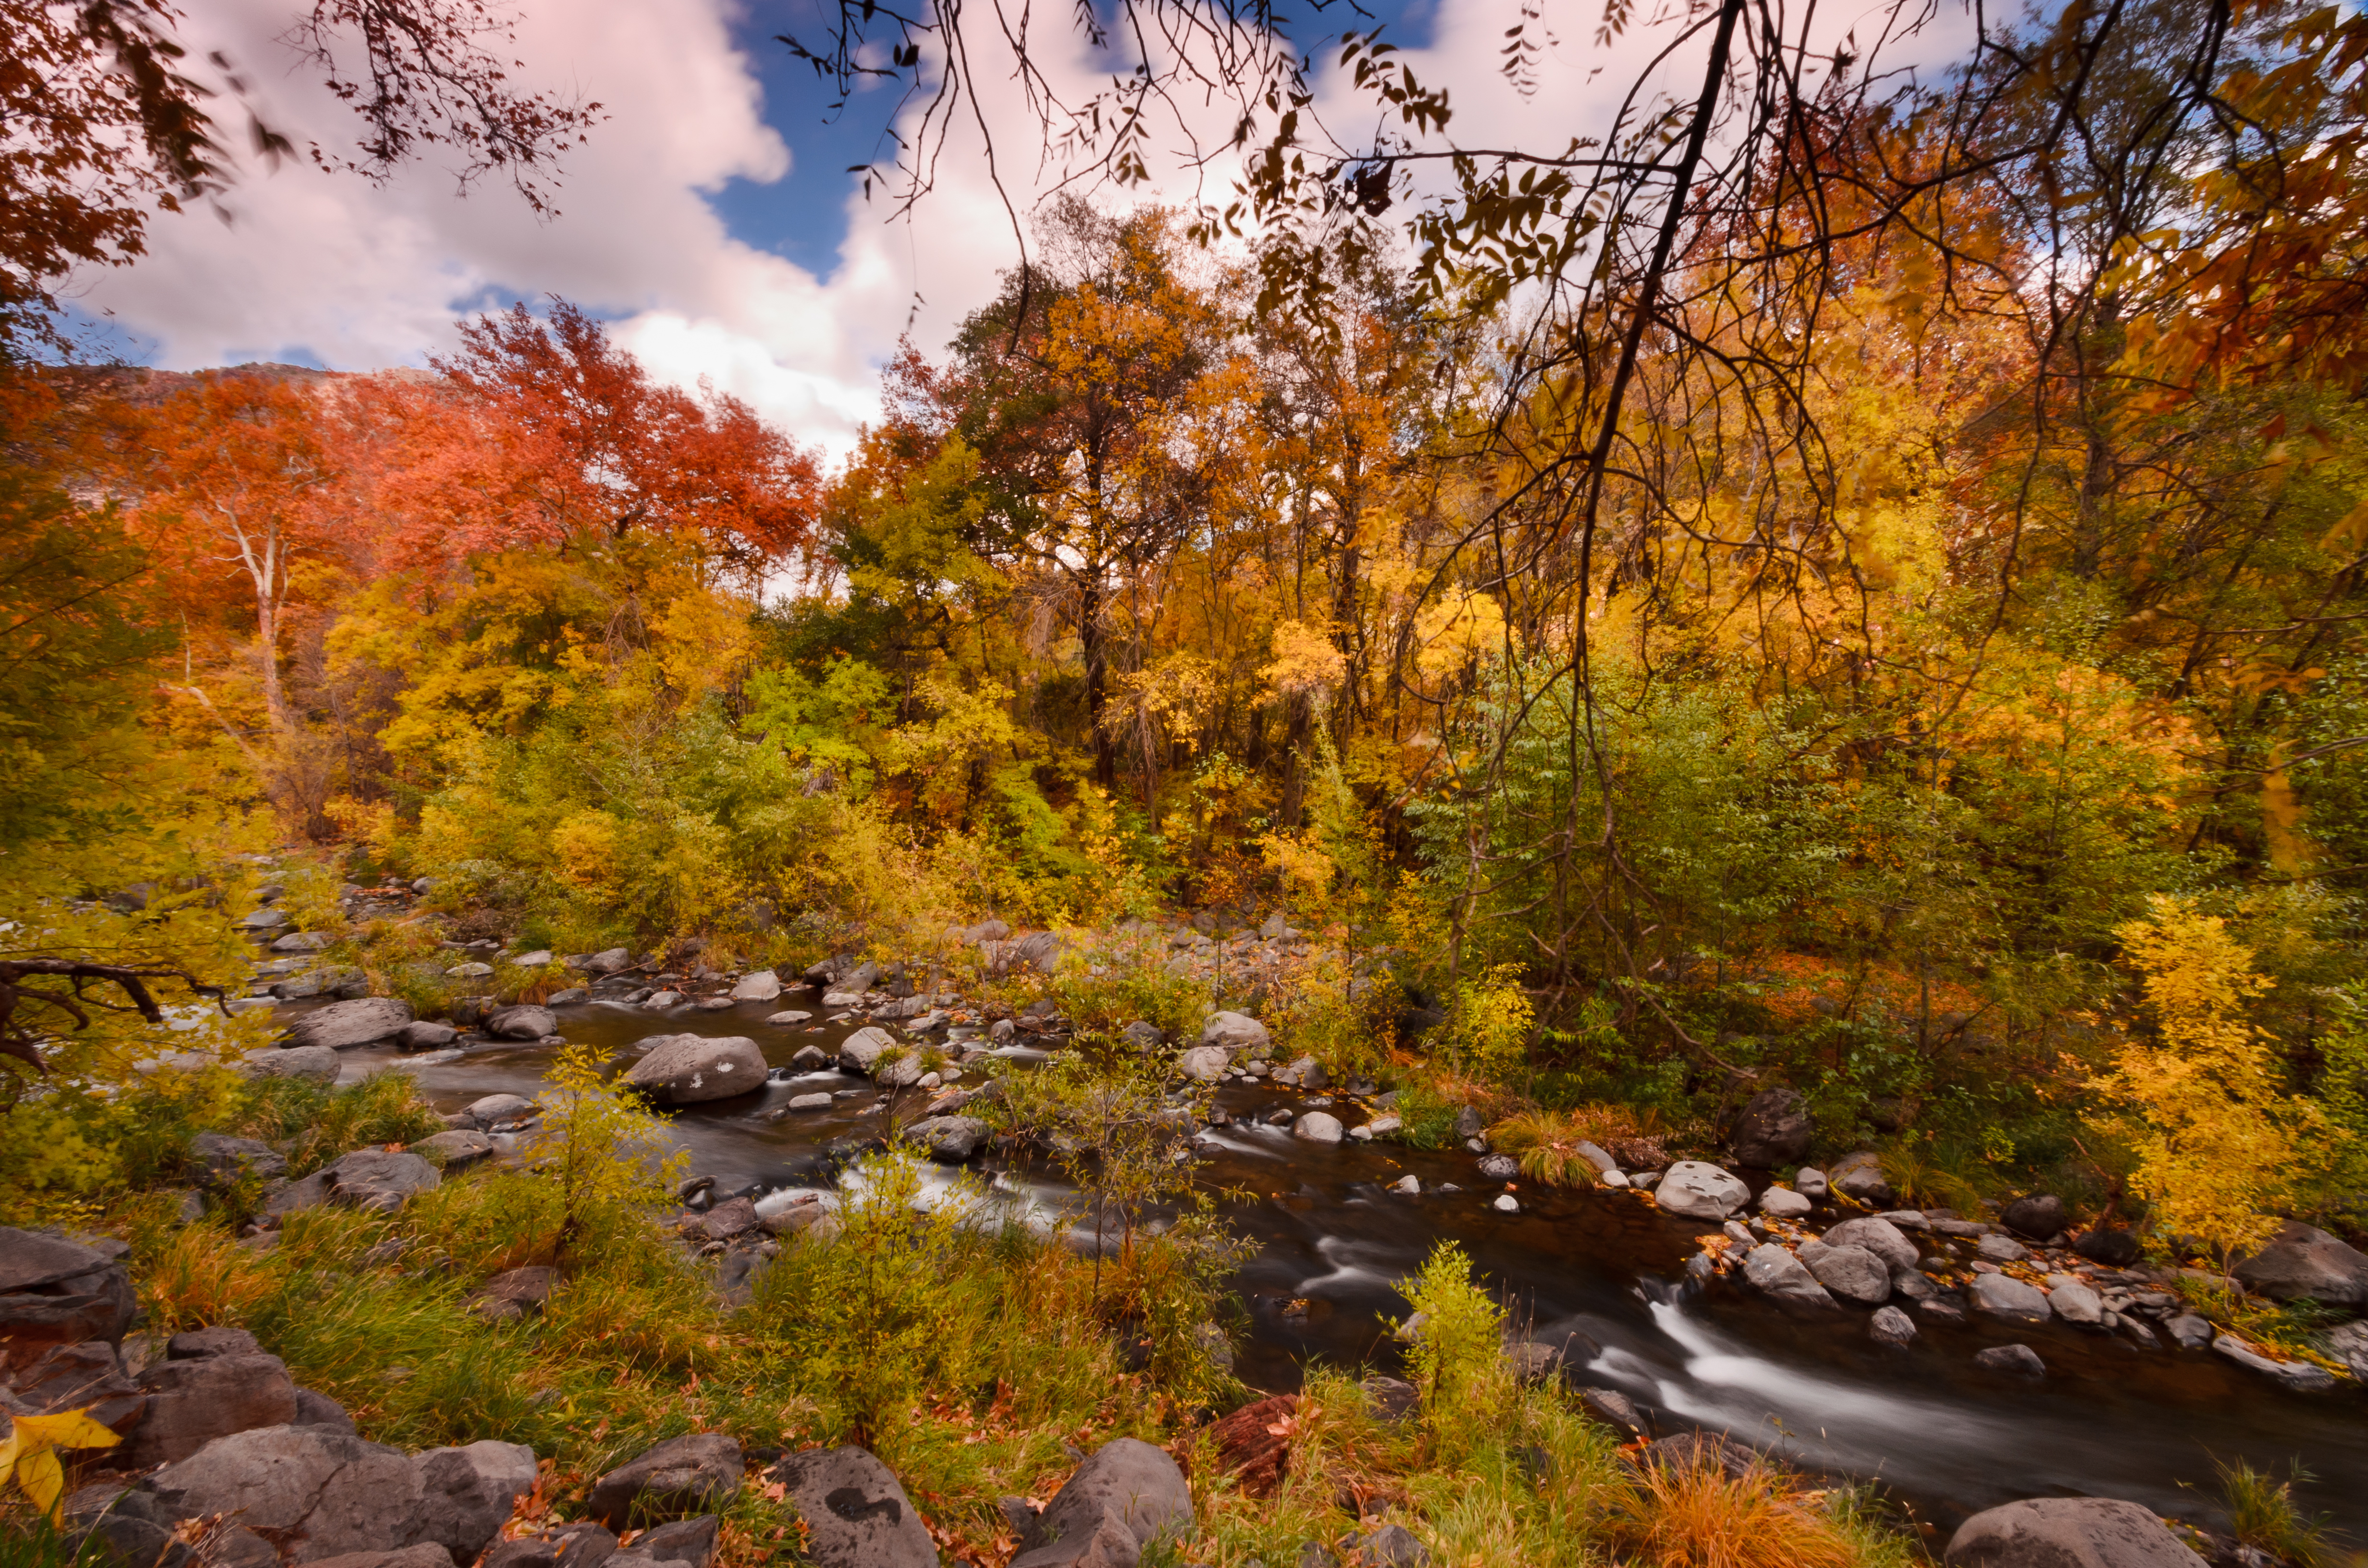 Autumn at Oak Creek